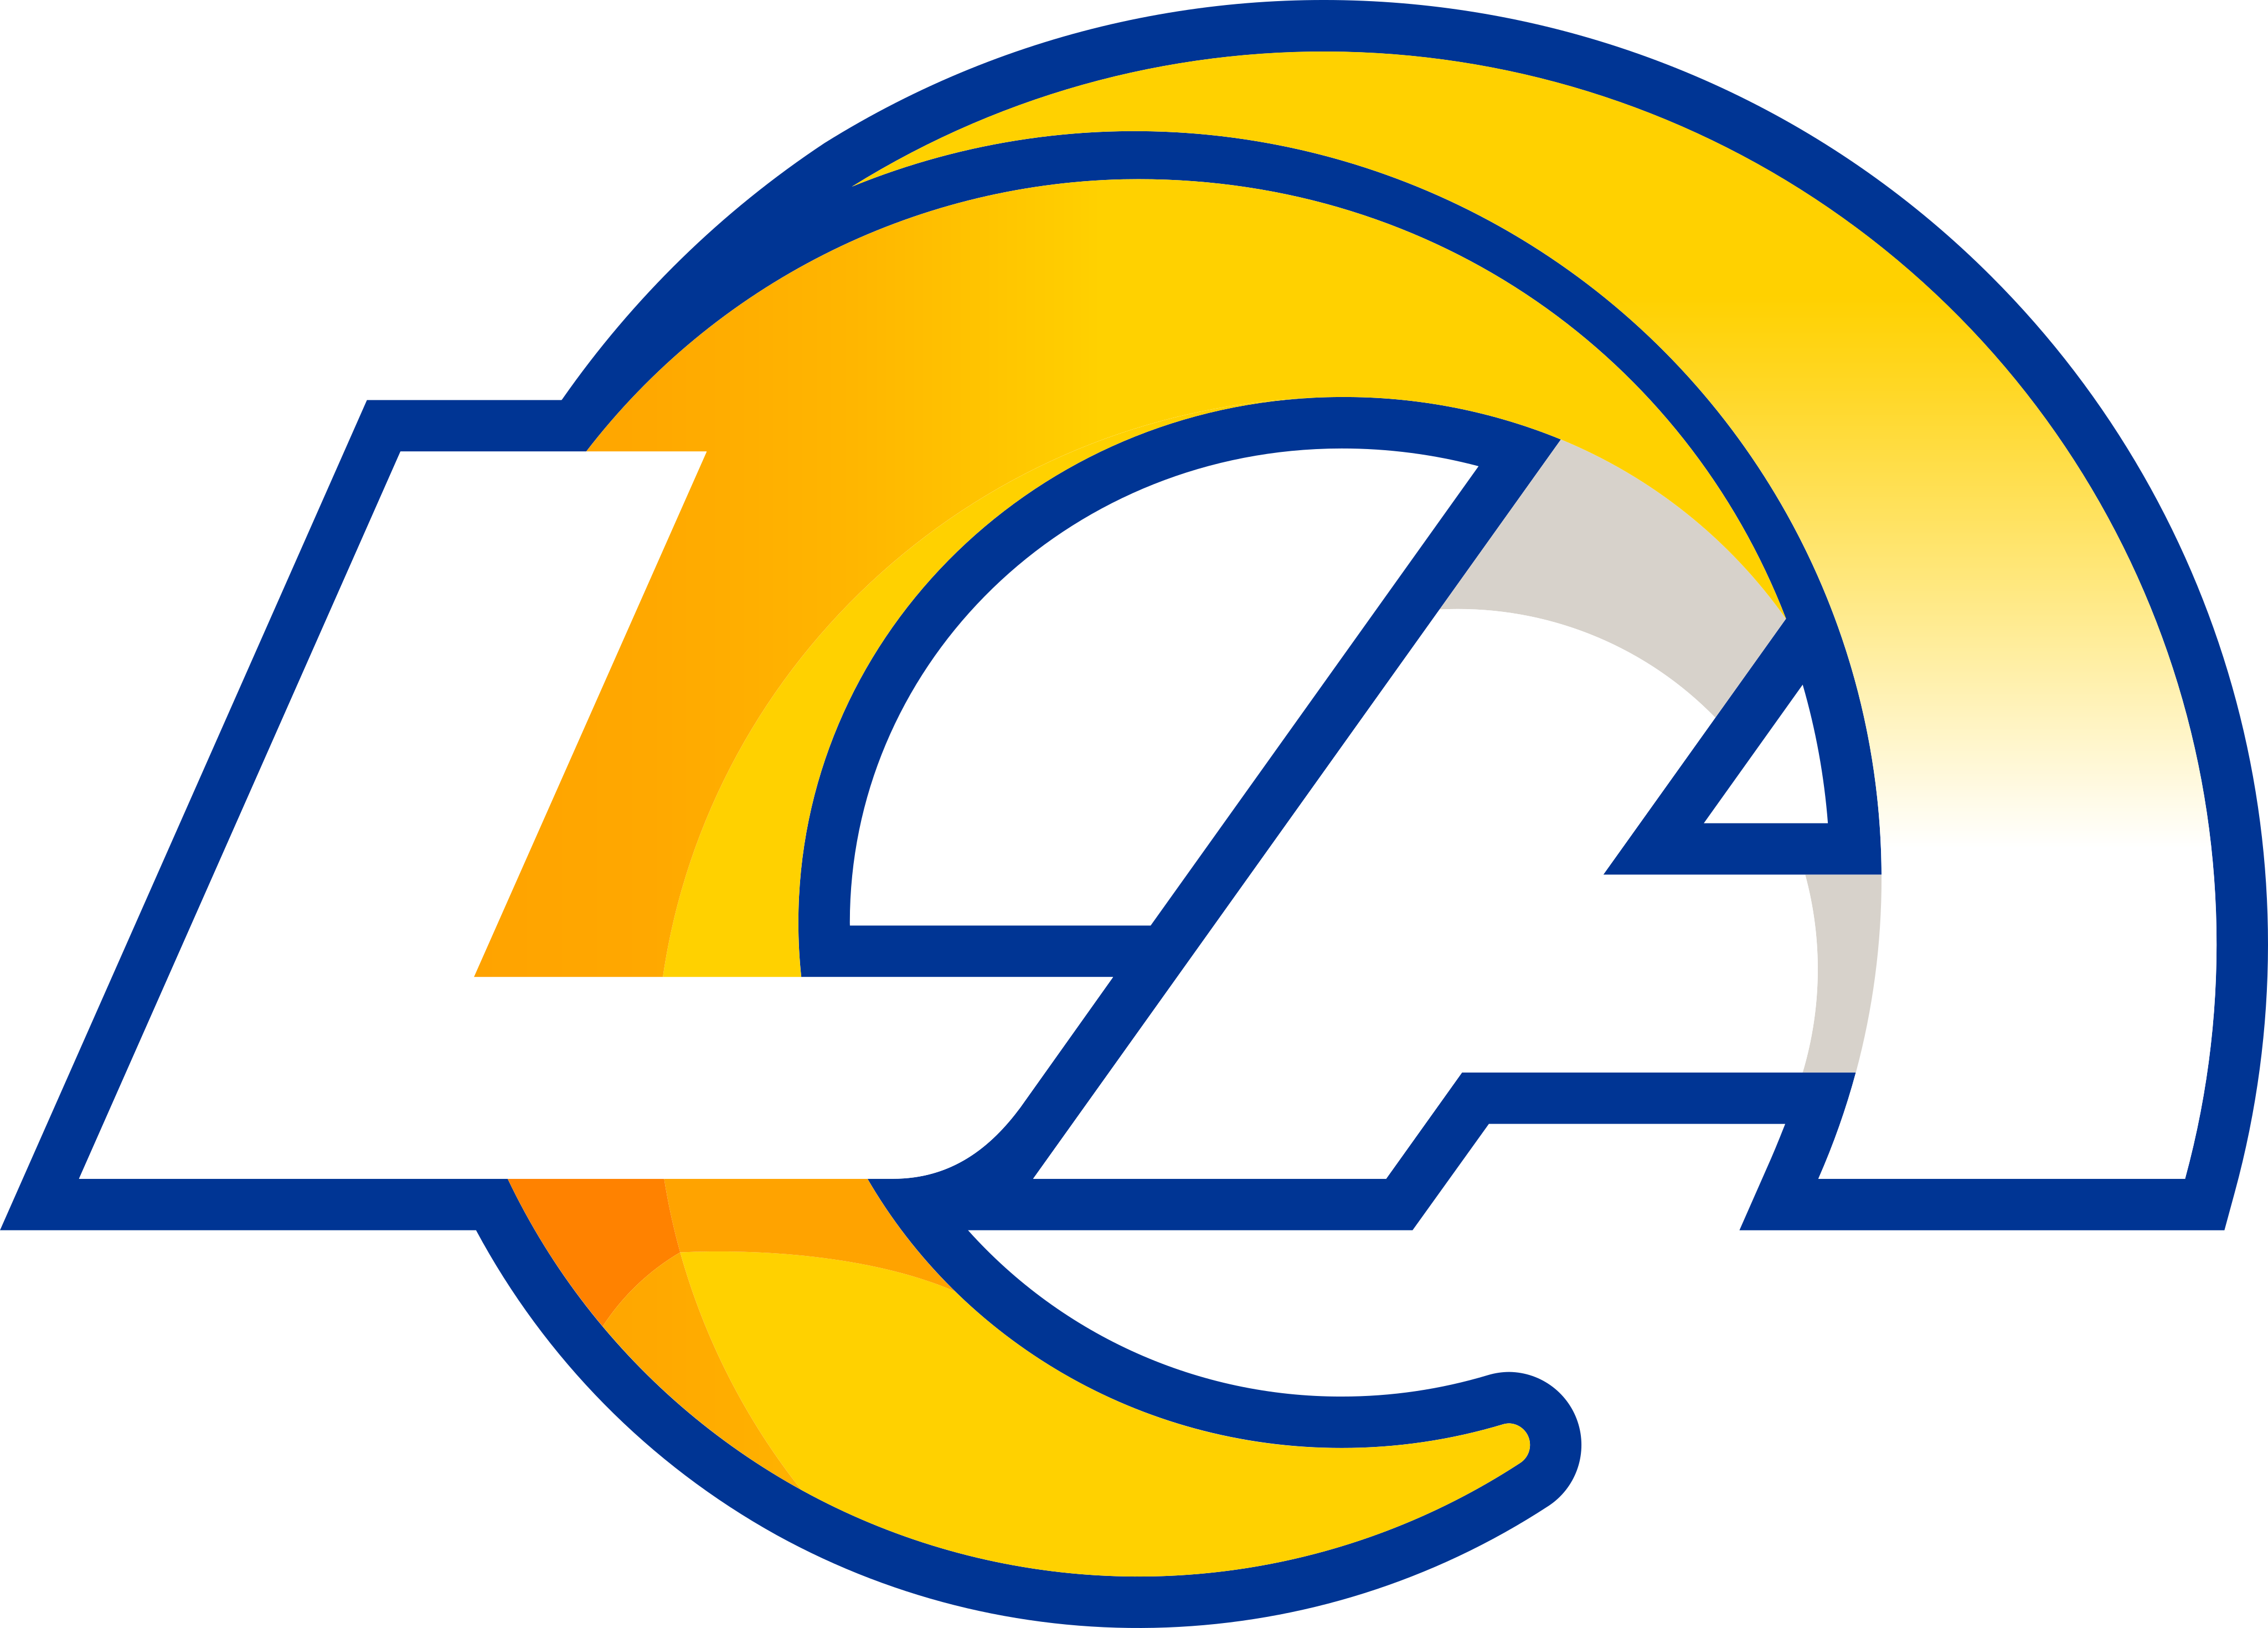 la rams logo 1 - Los Angeles Rams Logo